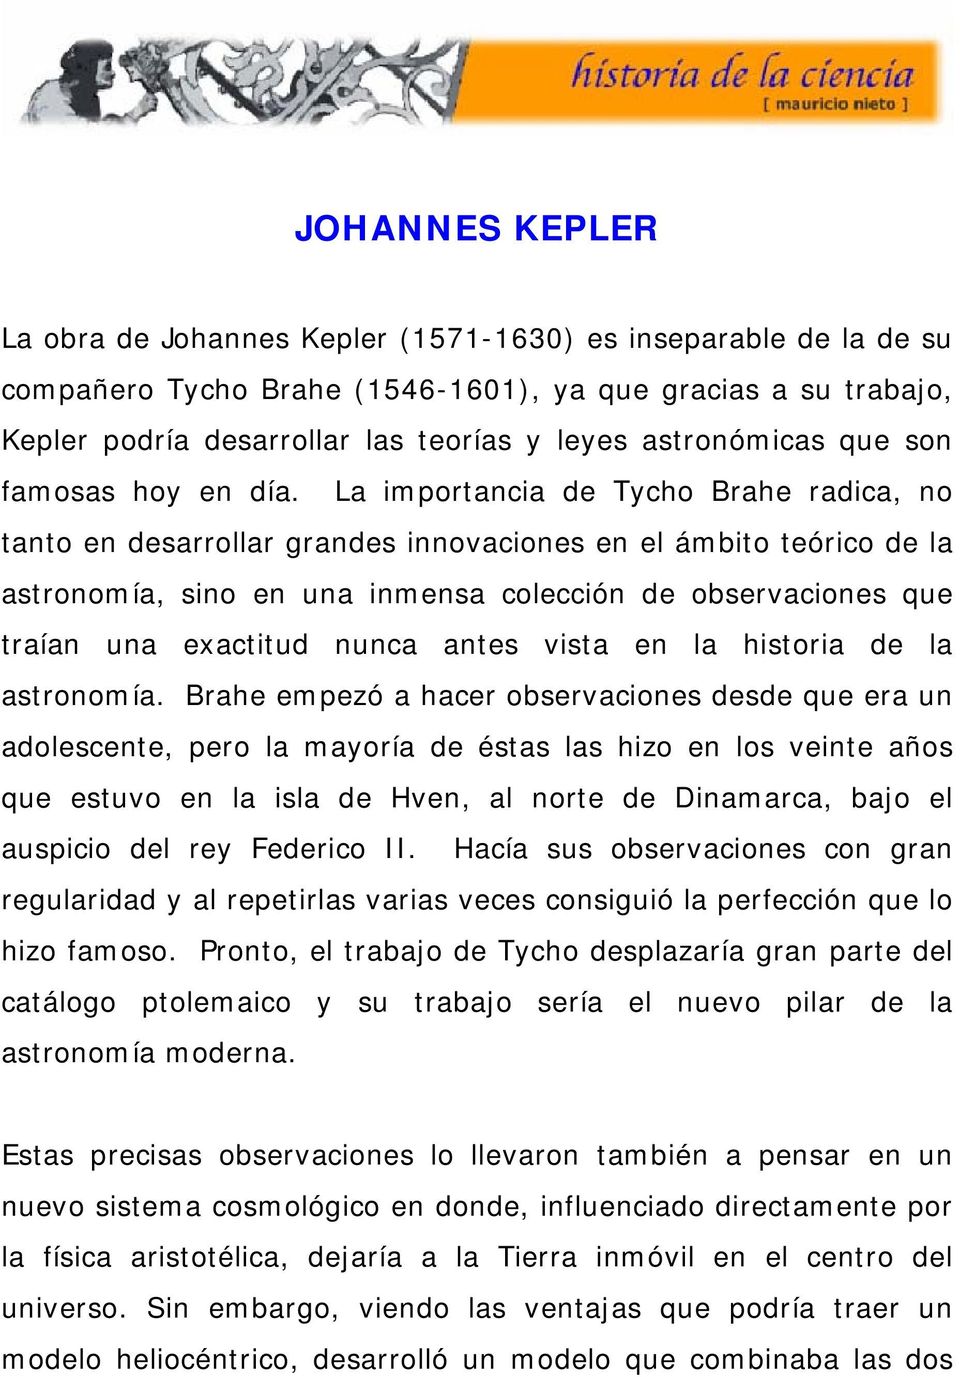 El sistema de Tycho Brahe - PDF Descargar libre